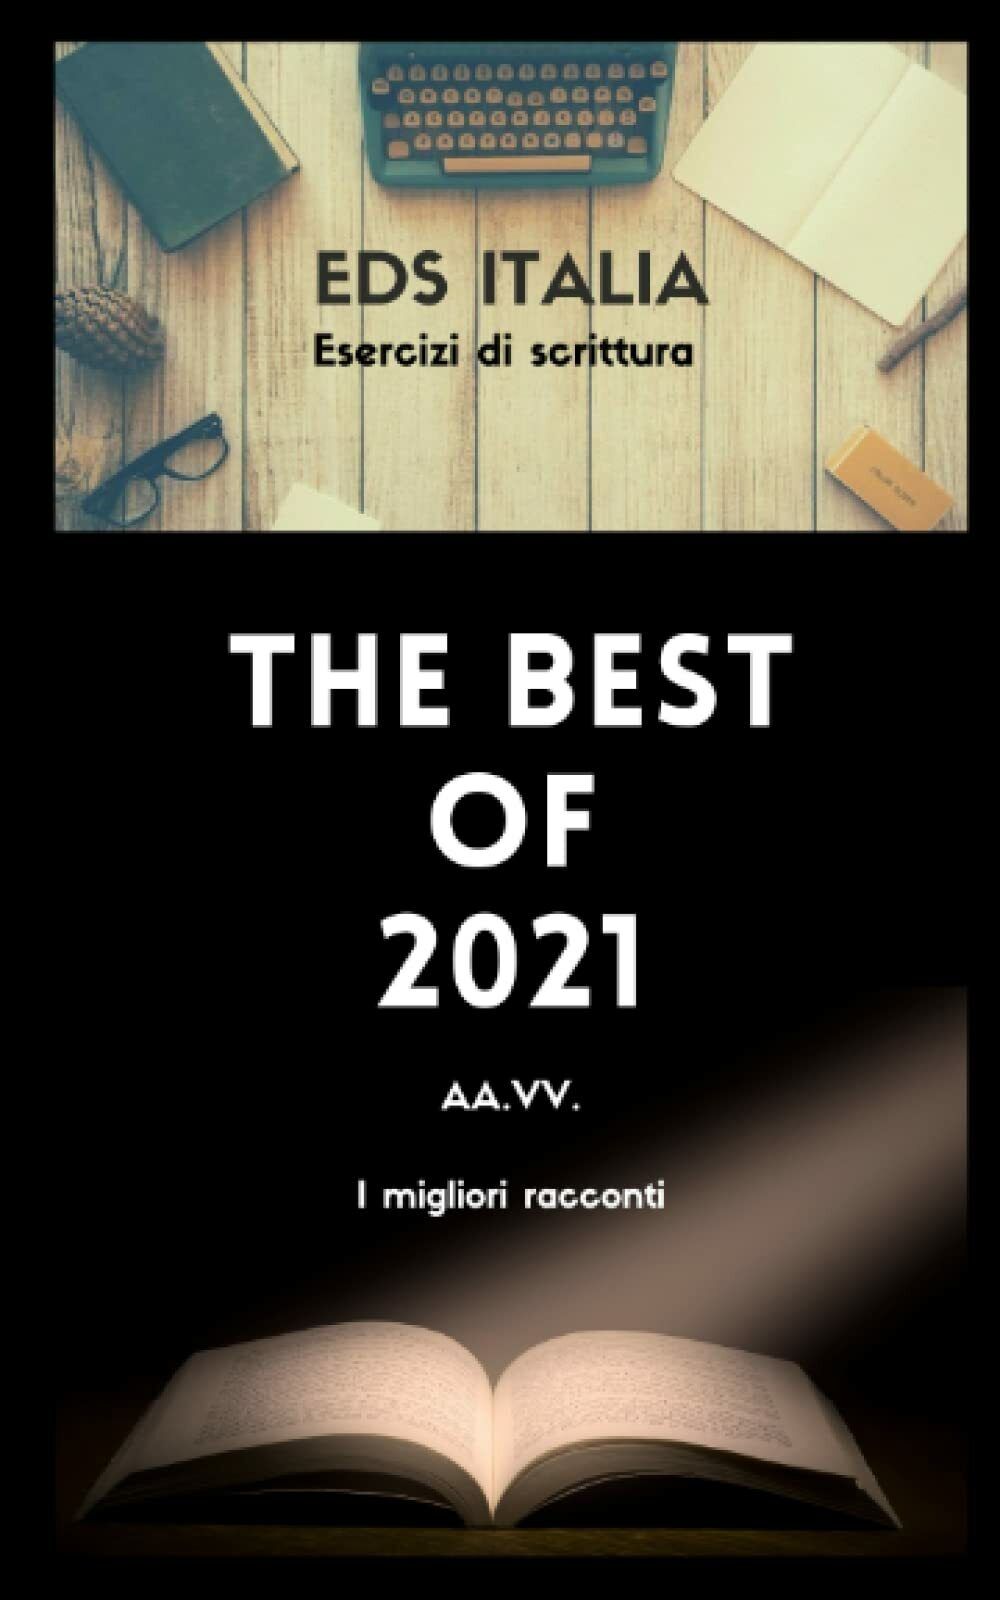 EDS ITALIA. THE BEST OF 2021: I MIGLIORI RACCONTI DEI CONTEST DI @EDS_ITALIA di 